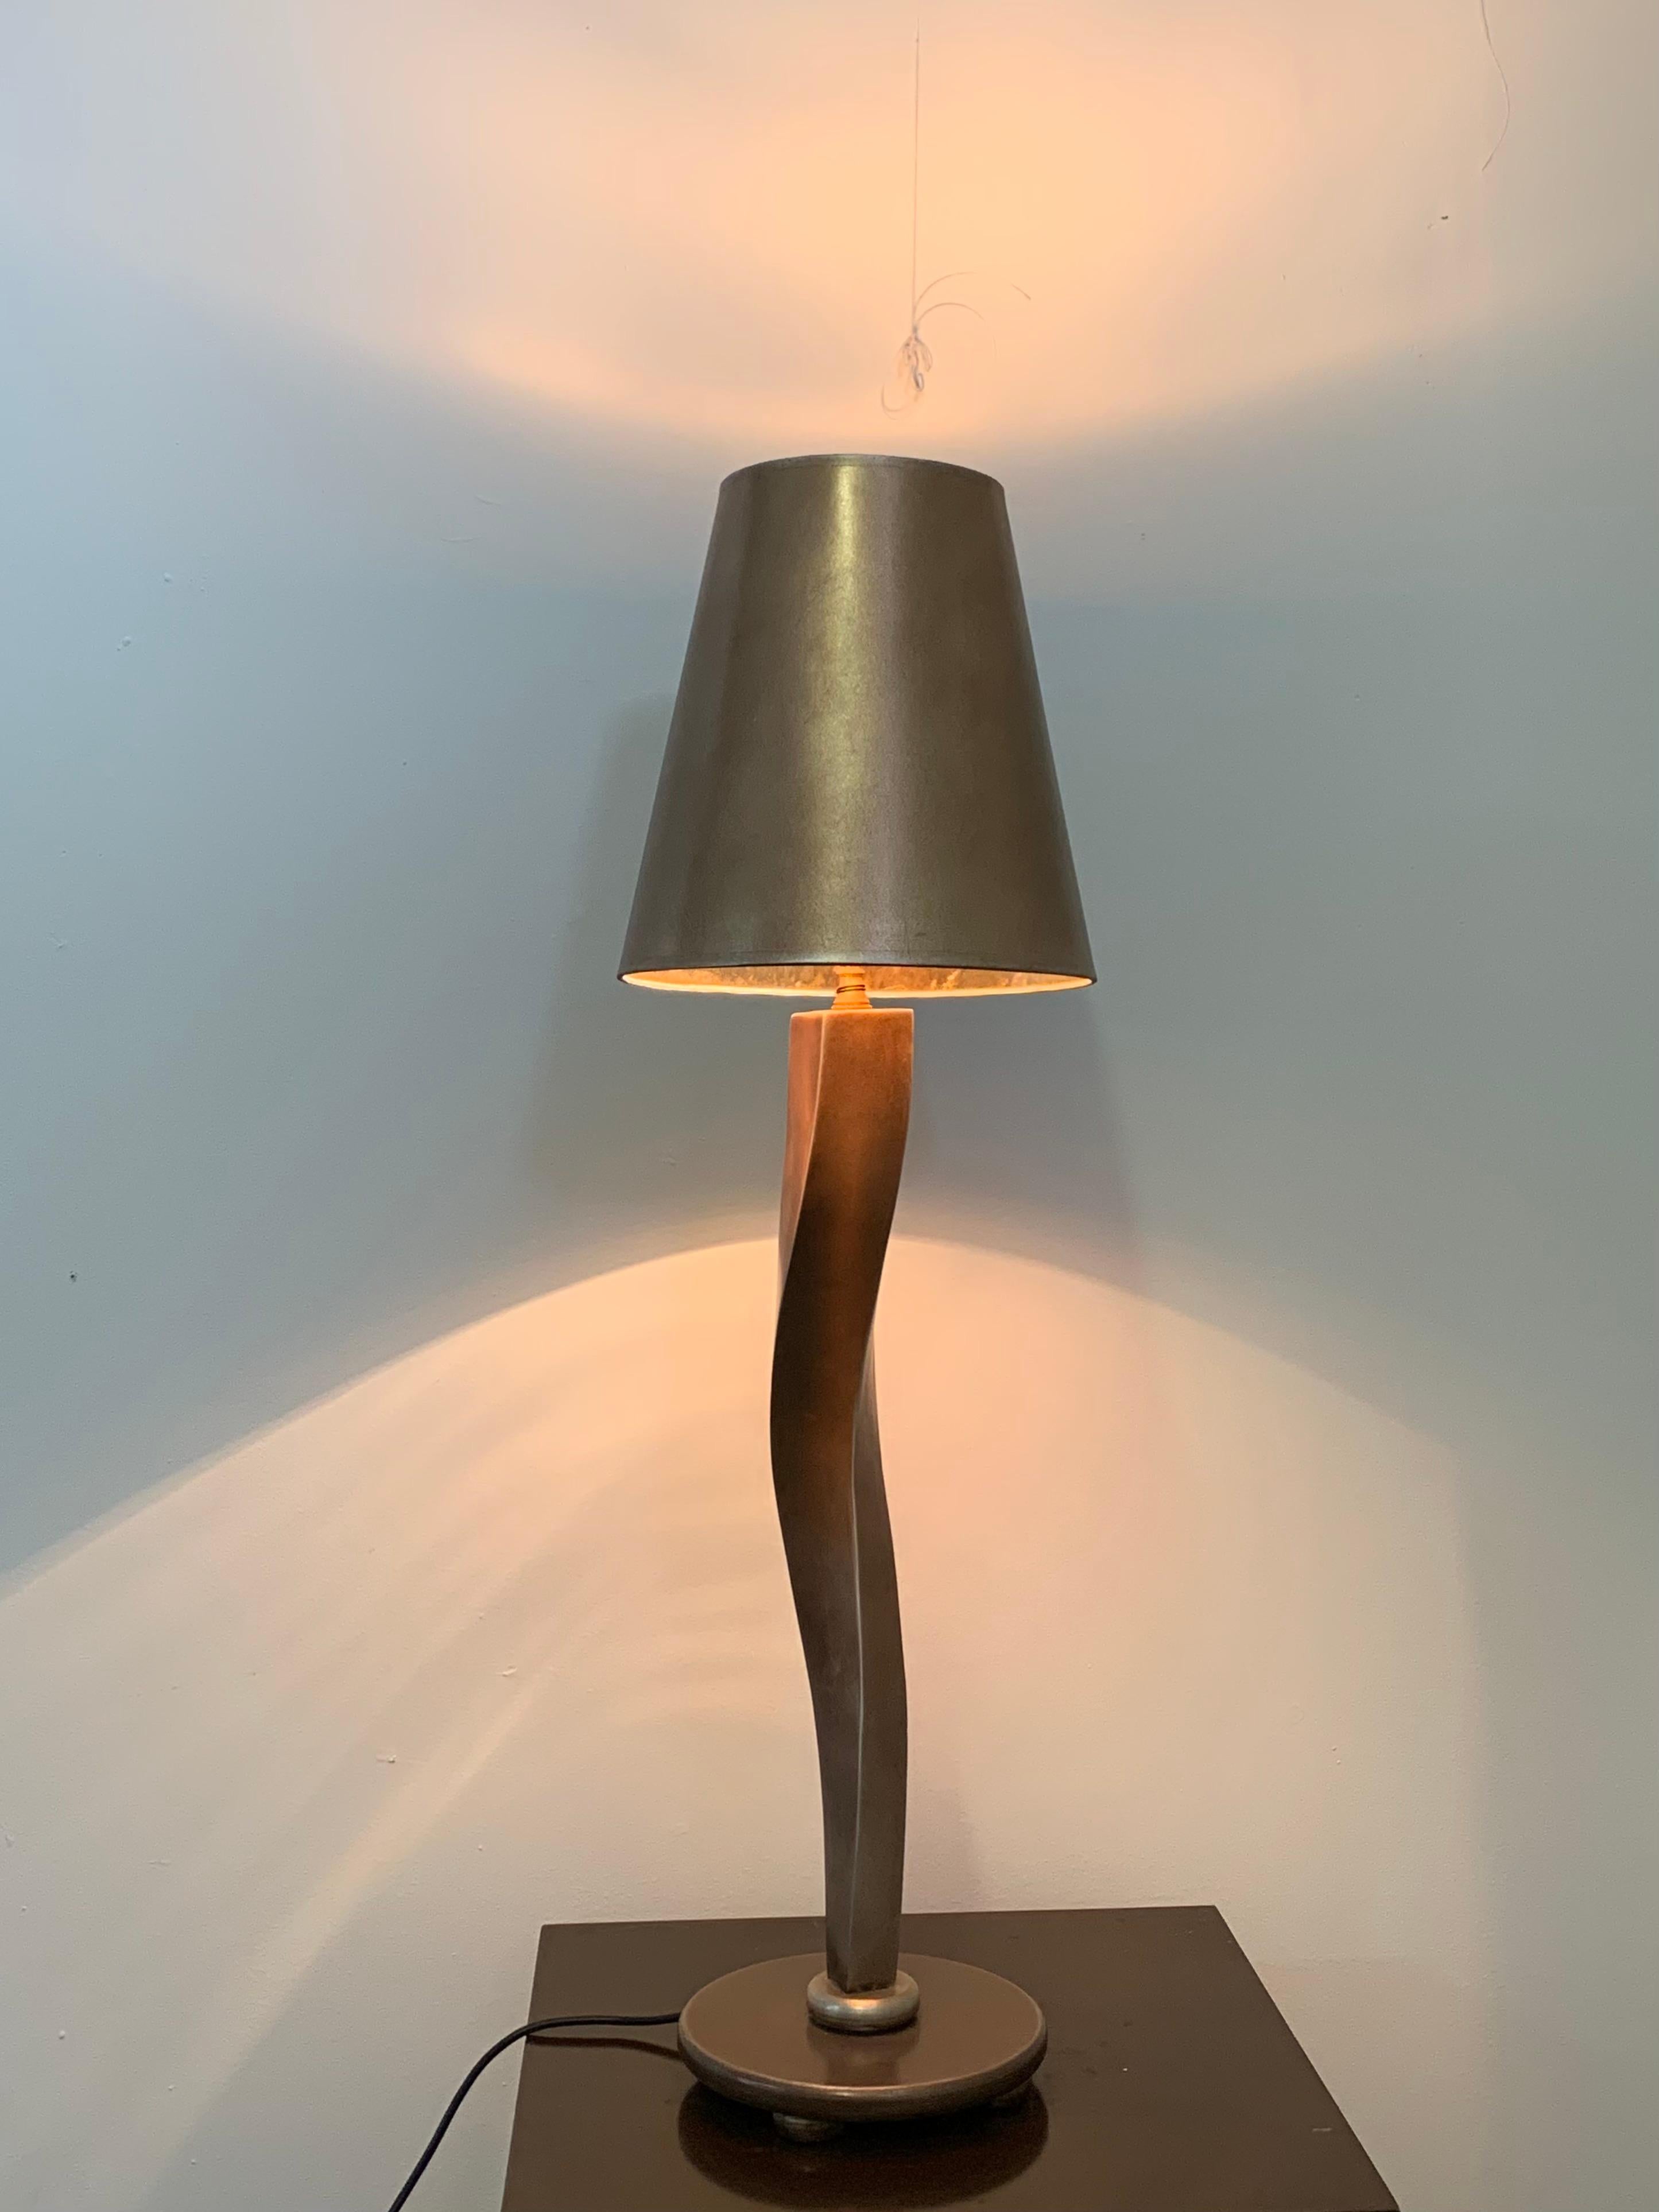 Lampe von Lam Lee Group/Leeazanne, 1990er Jahre. Sinuous Blattgold Lampe schön patiniert vergoldeter Bronze. Europäische Steckdose (bis zu 250 V). 